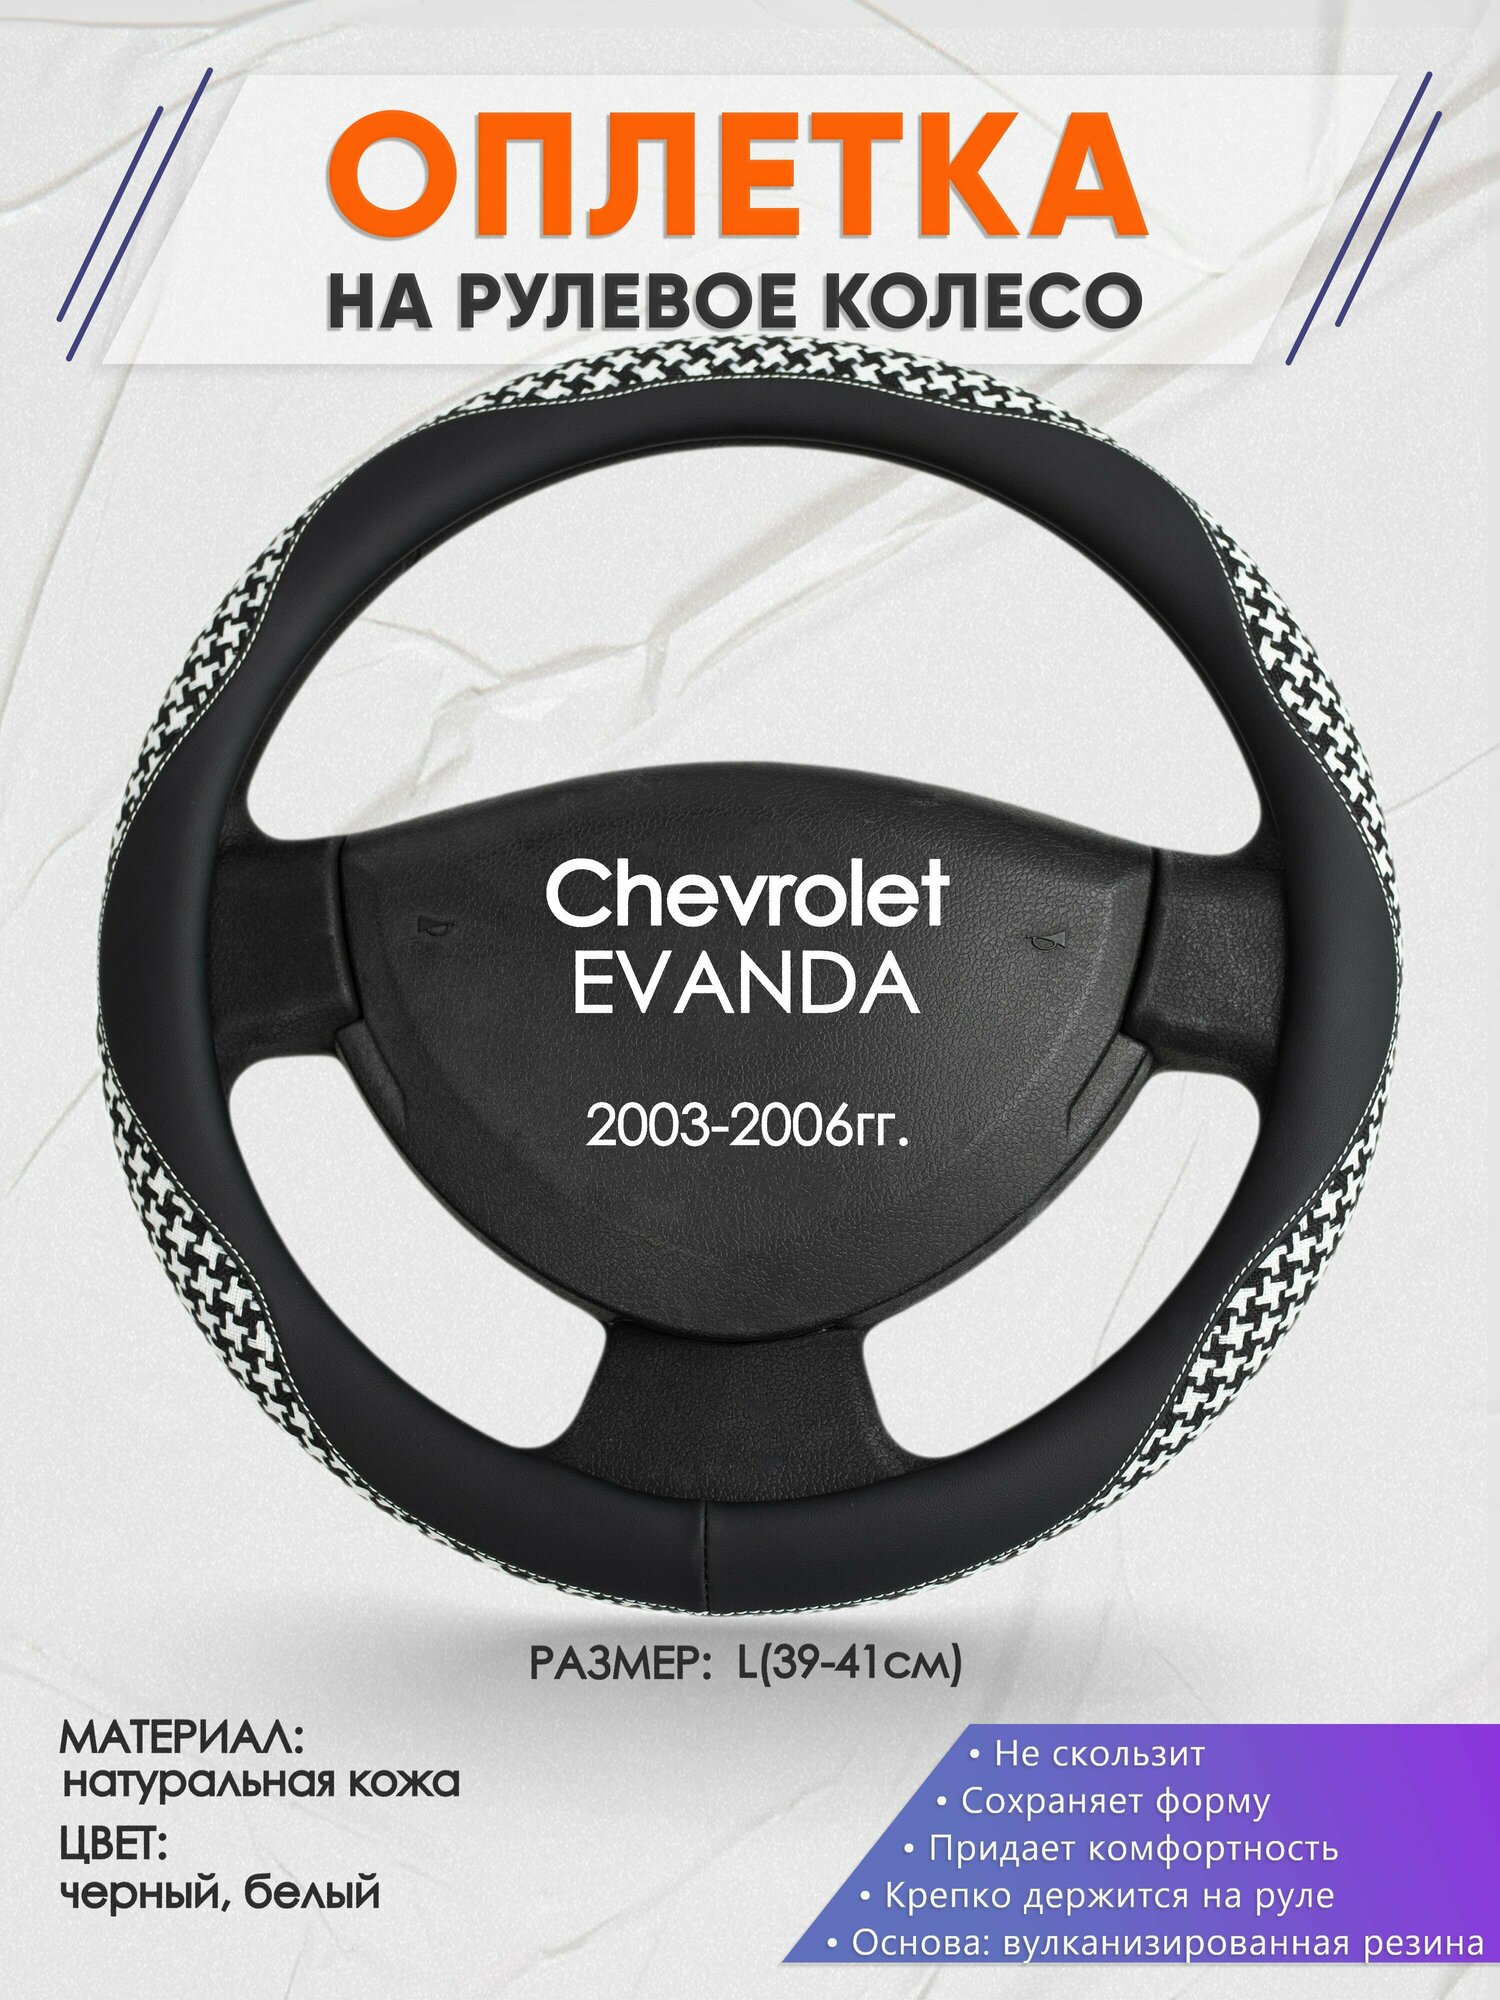 Оплетка на руль для Chevrolet EVANDA(Шевроле Еванда) 2003-2006, L(39-41см), Натуральная кожа 21